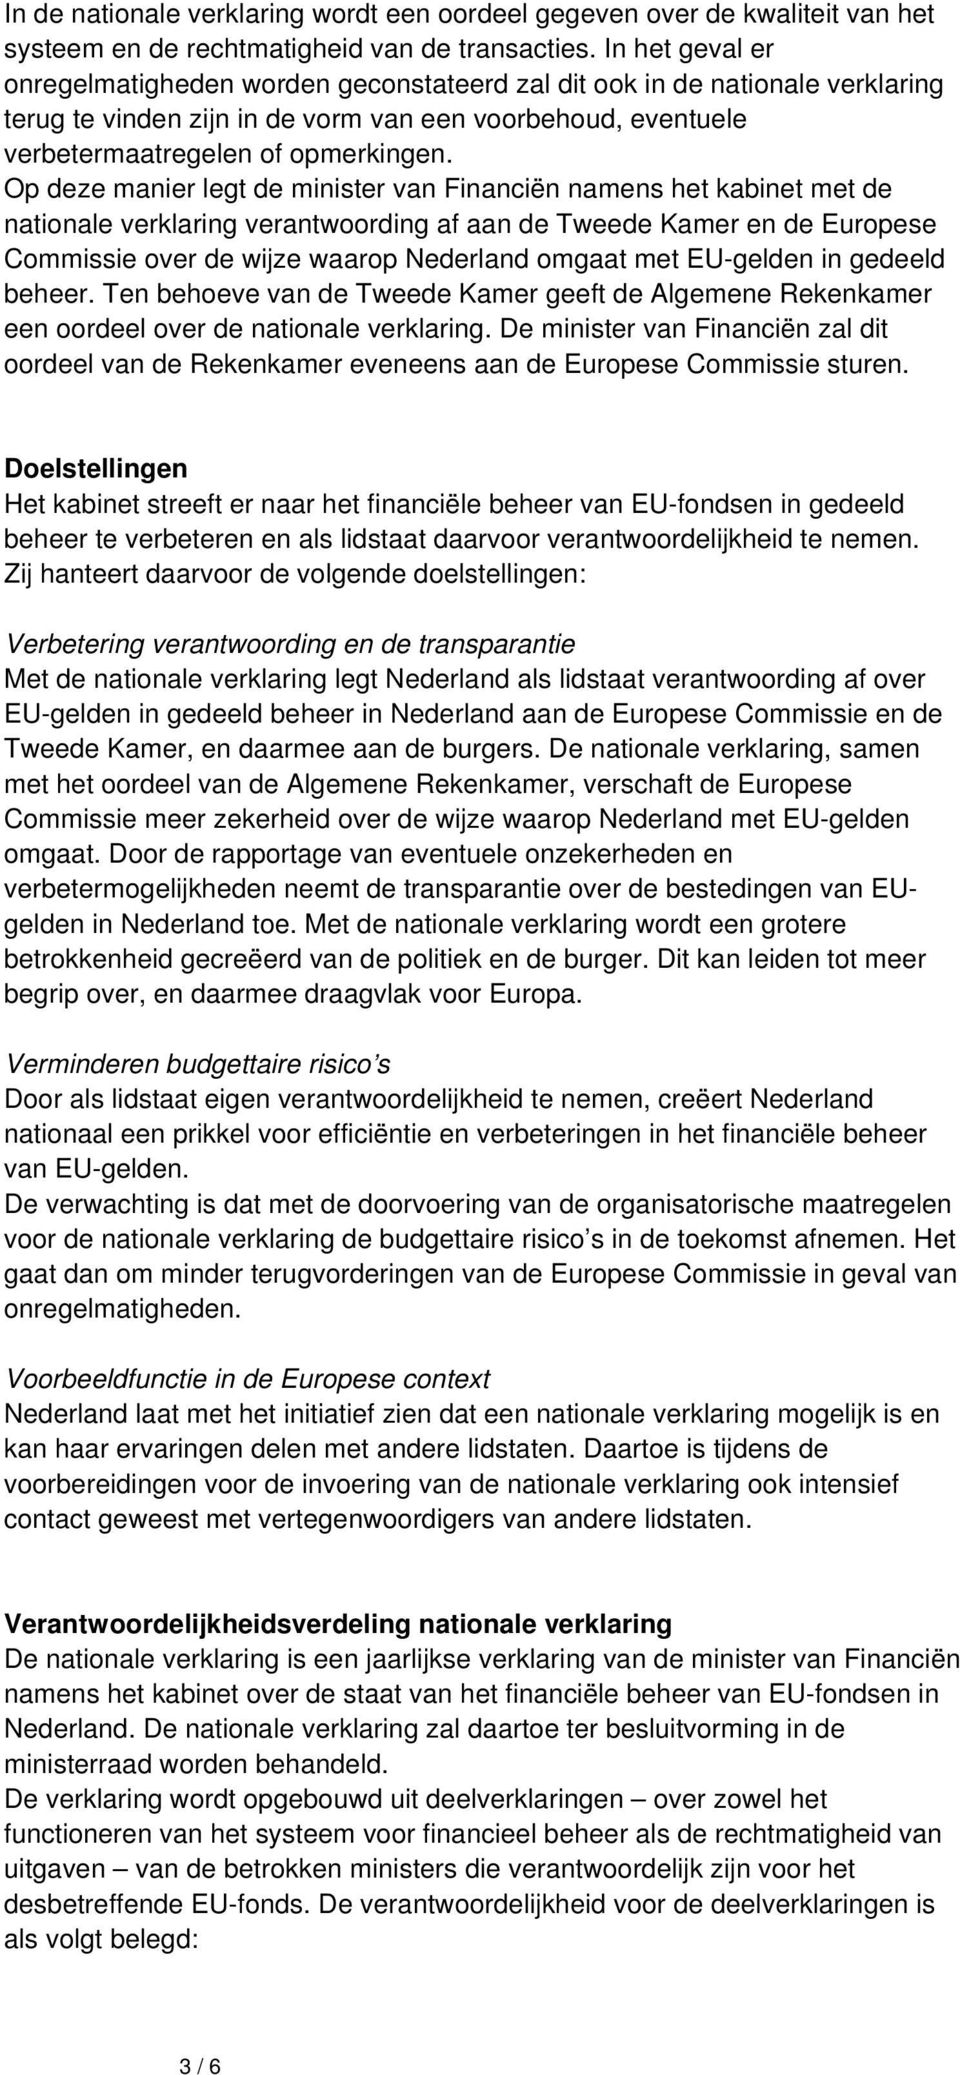 Op deze manier legt de minister van Financiën namens het kabinet met de nationale verklaring verantwoording af aan de Tweede Kamer en de Europese Commissie over de wijze waarop Nederland omgaat met